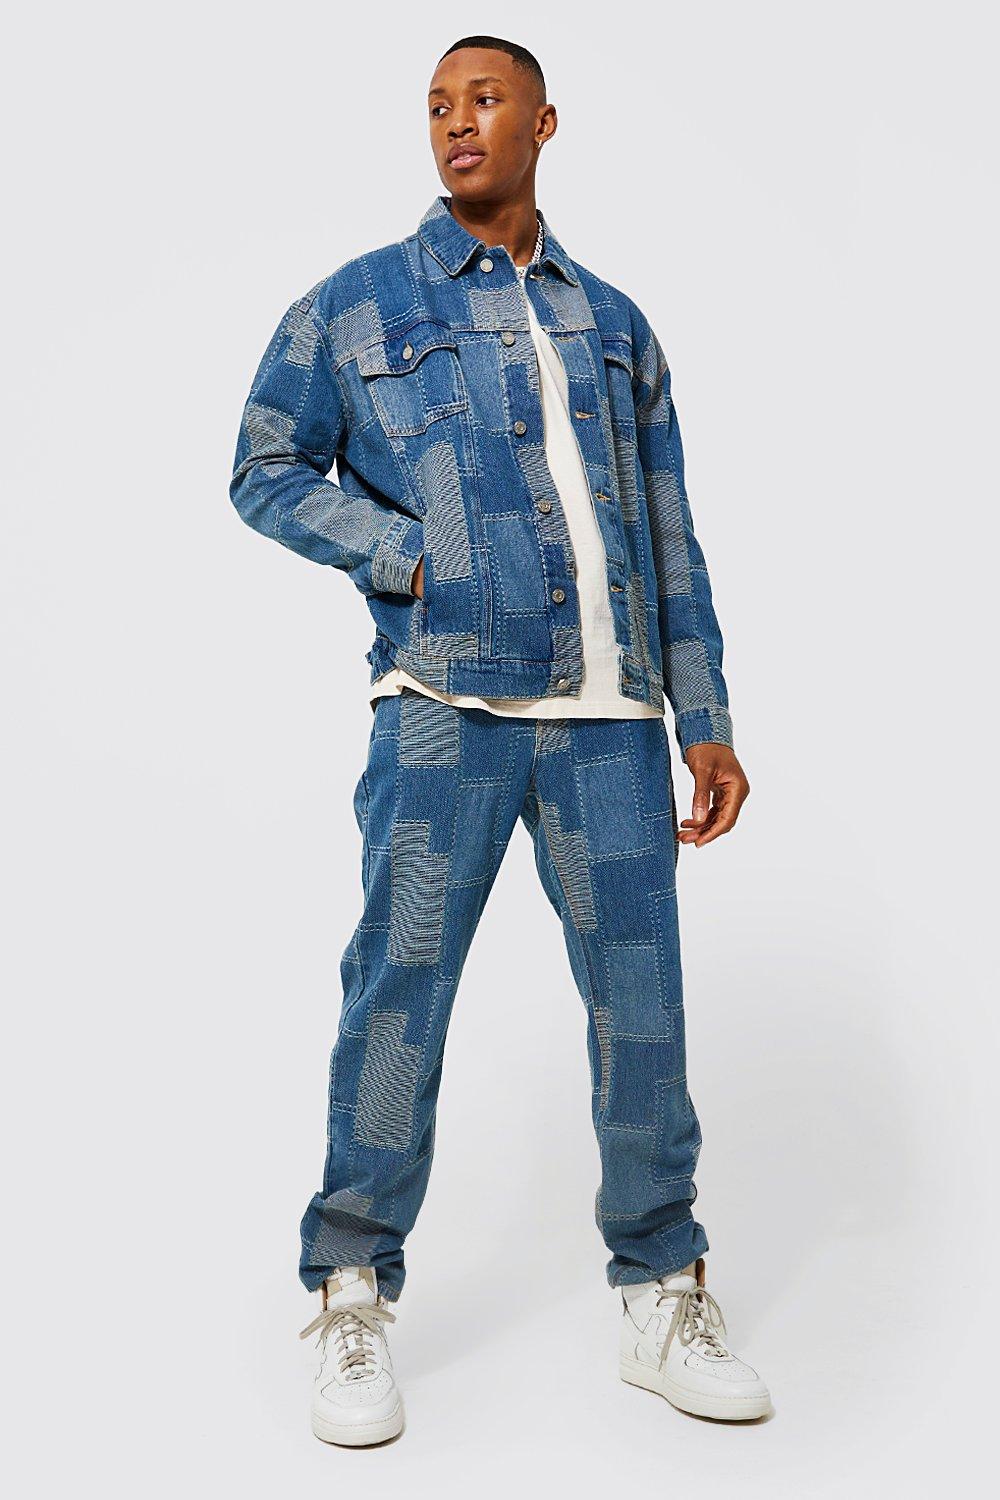 Color Block Patchwork Denim Jacket Men 11XL 10XL Plus Size Jean Jackets  Vintage Coat Male Big Size Outerwear